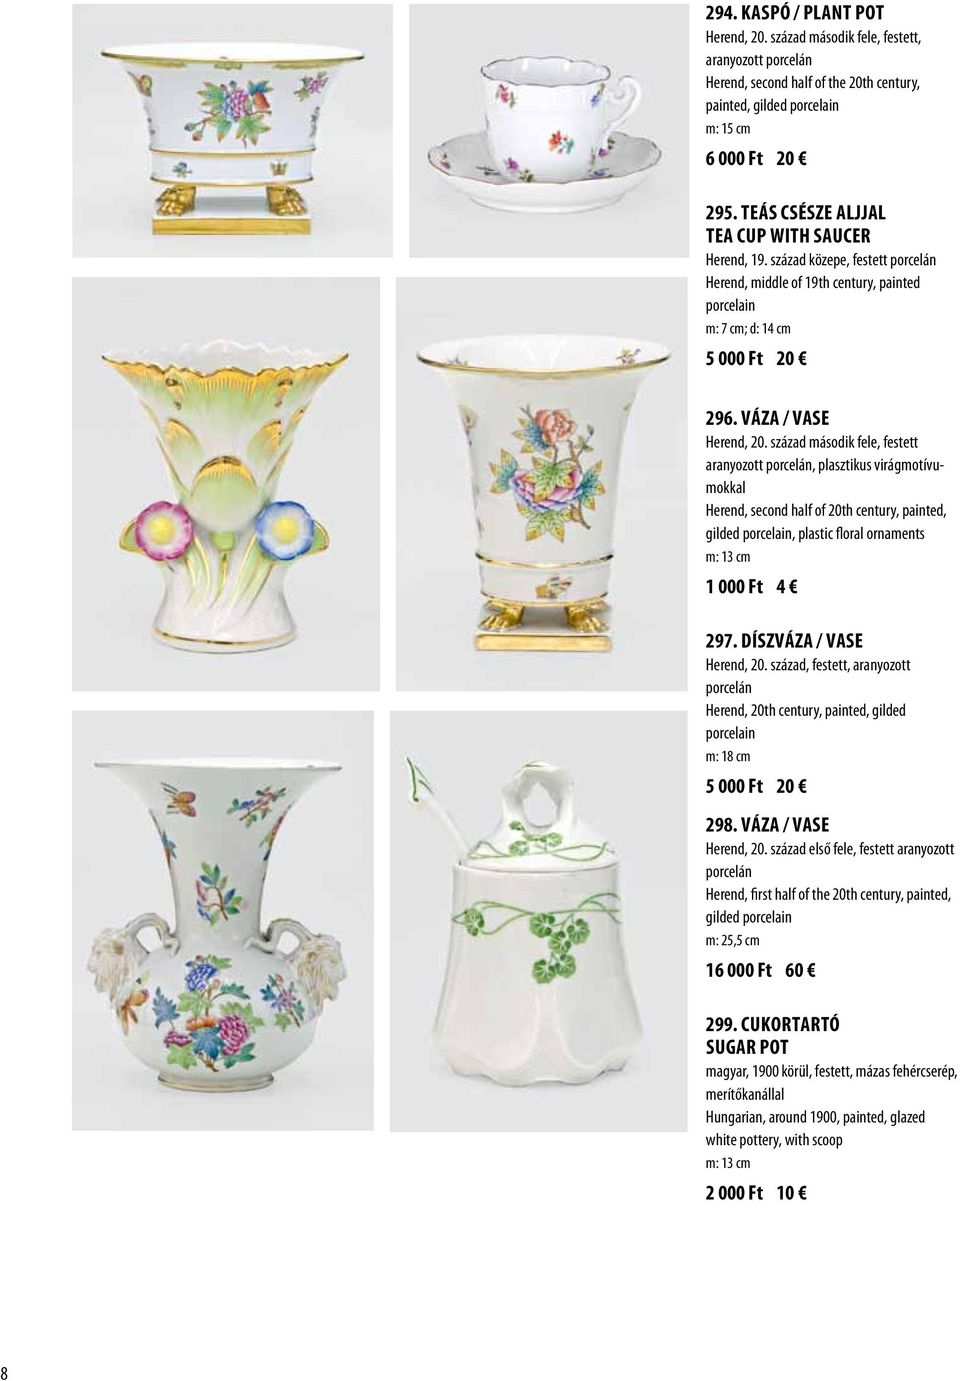 század második fele, festett aranyozott porcelán, plasztikus virágmotívumokkal Herend, second half of 20th century, painted, gilded porcelain, plastic floral ornaments m: 13 cm 1 000 Ft 4 297.